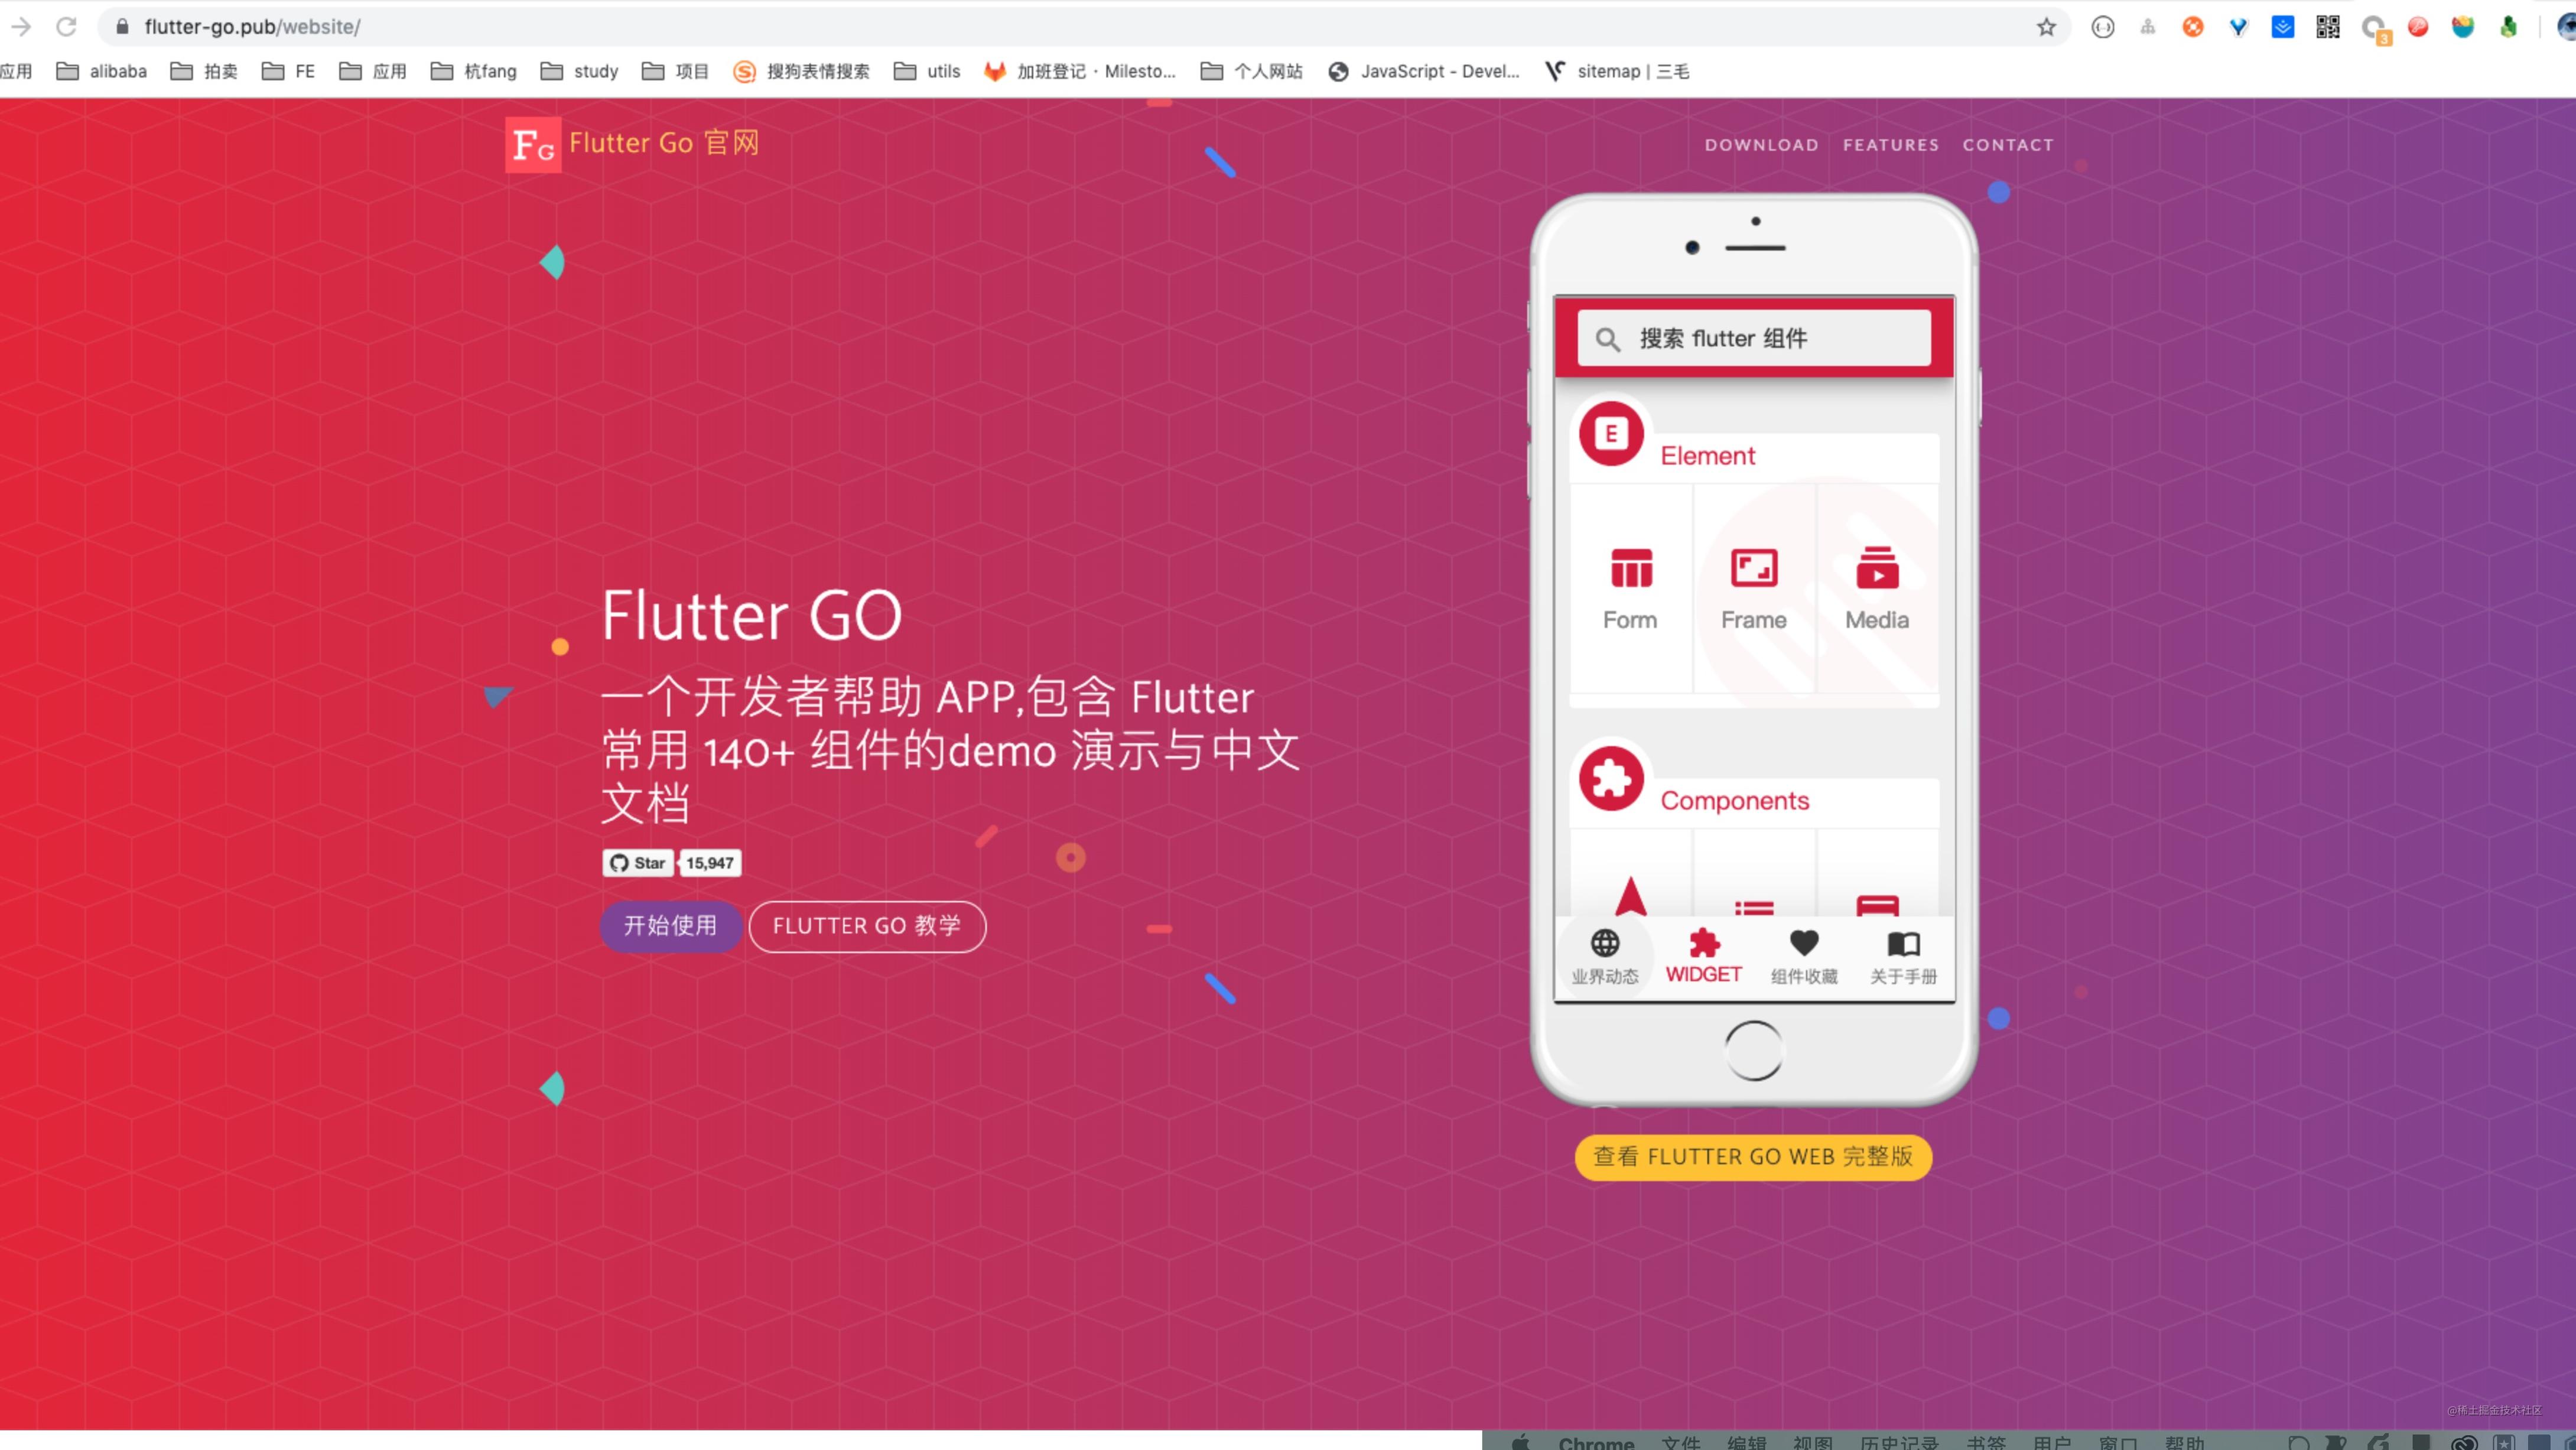 Flutter 开发者国服最强辅助 App：FlutterGo  2.0 强势归来！！！